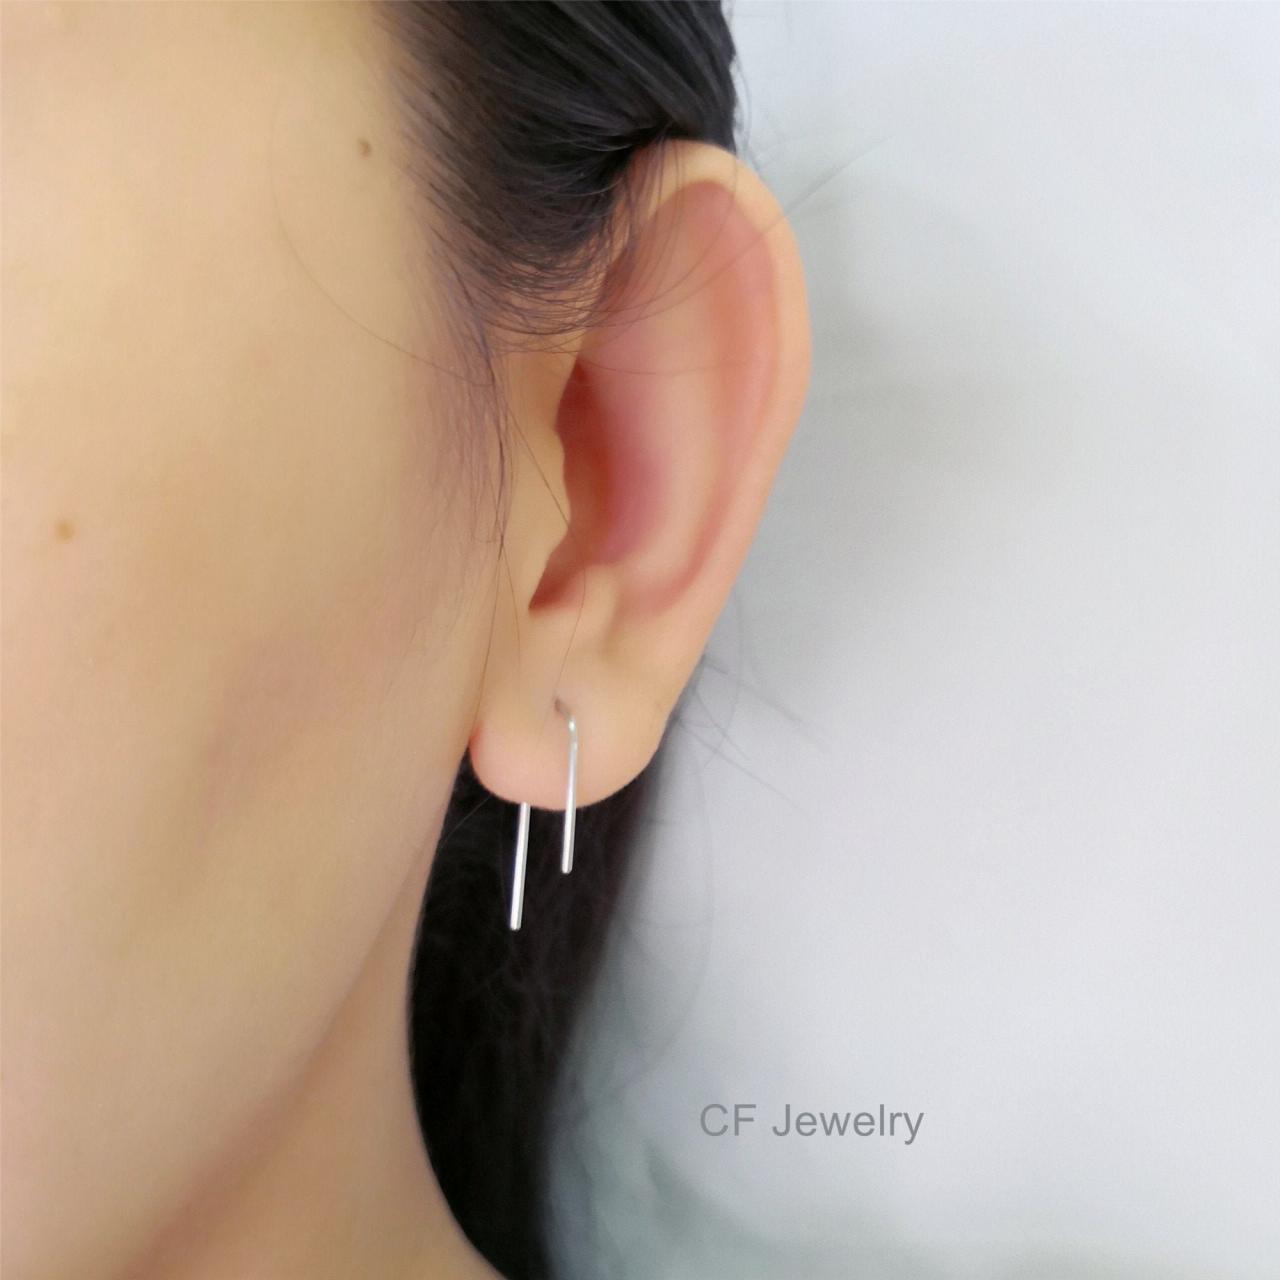 Staple Earrings, Asymmetry Arc Earrings, Arc Threader Earrings,open Hoop Earrings, Minimal Wire Earrings, Minimalist Earrings, Dainty Thread